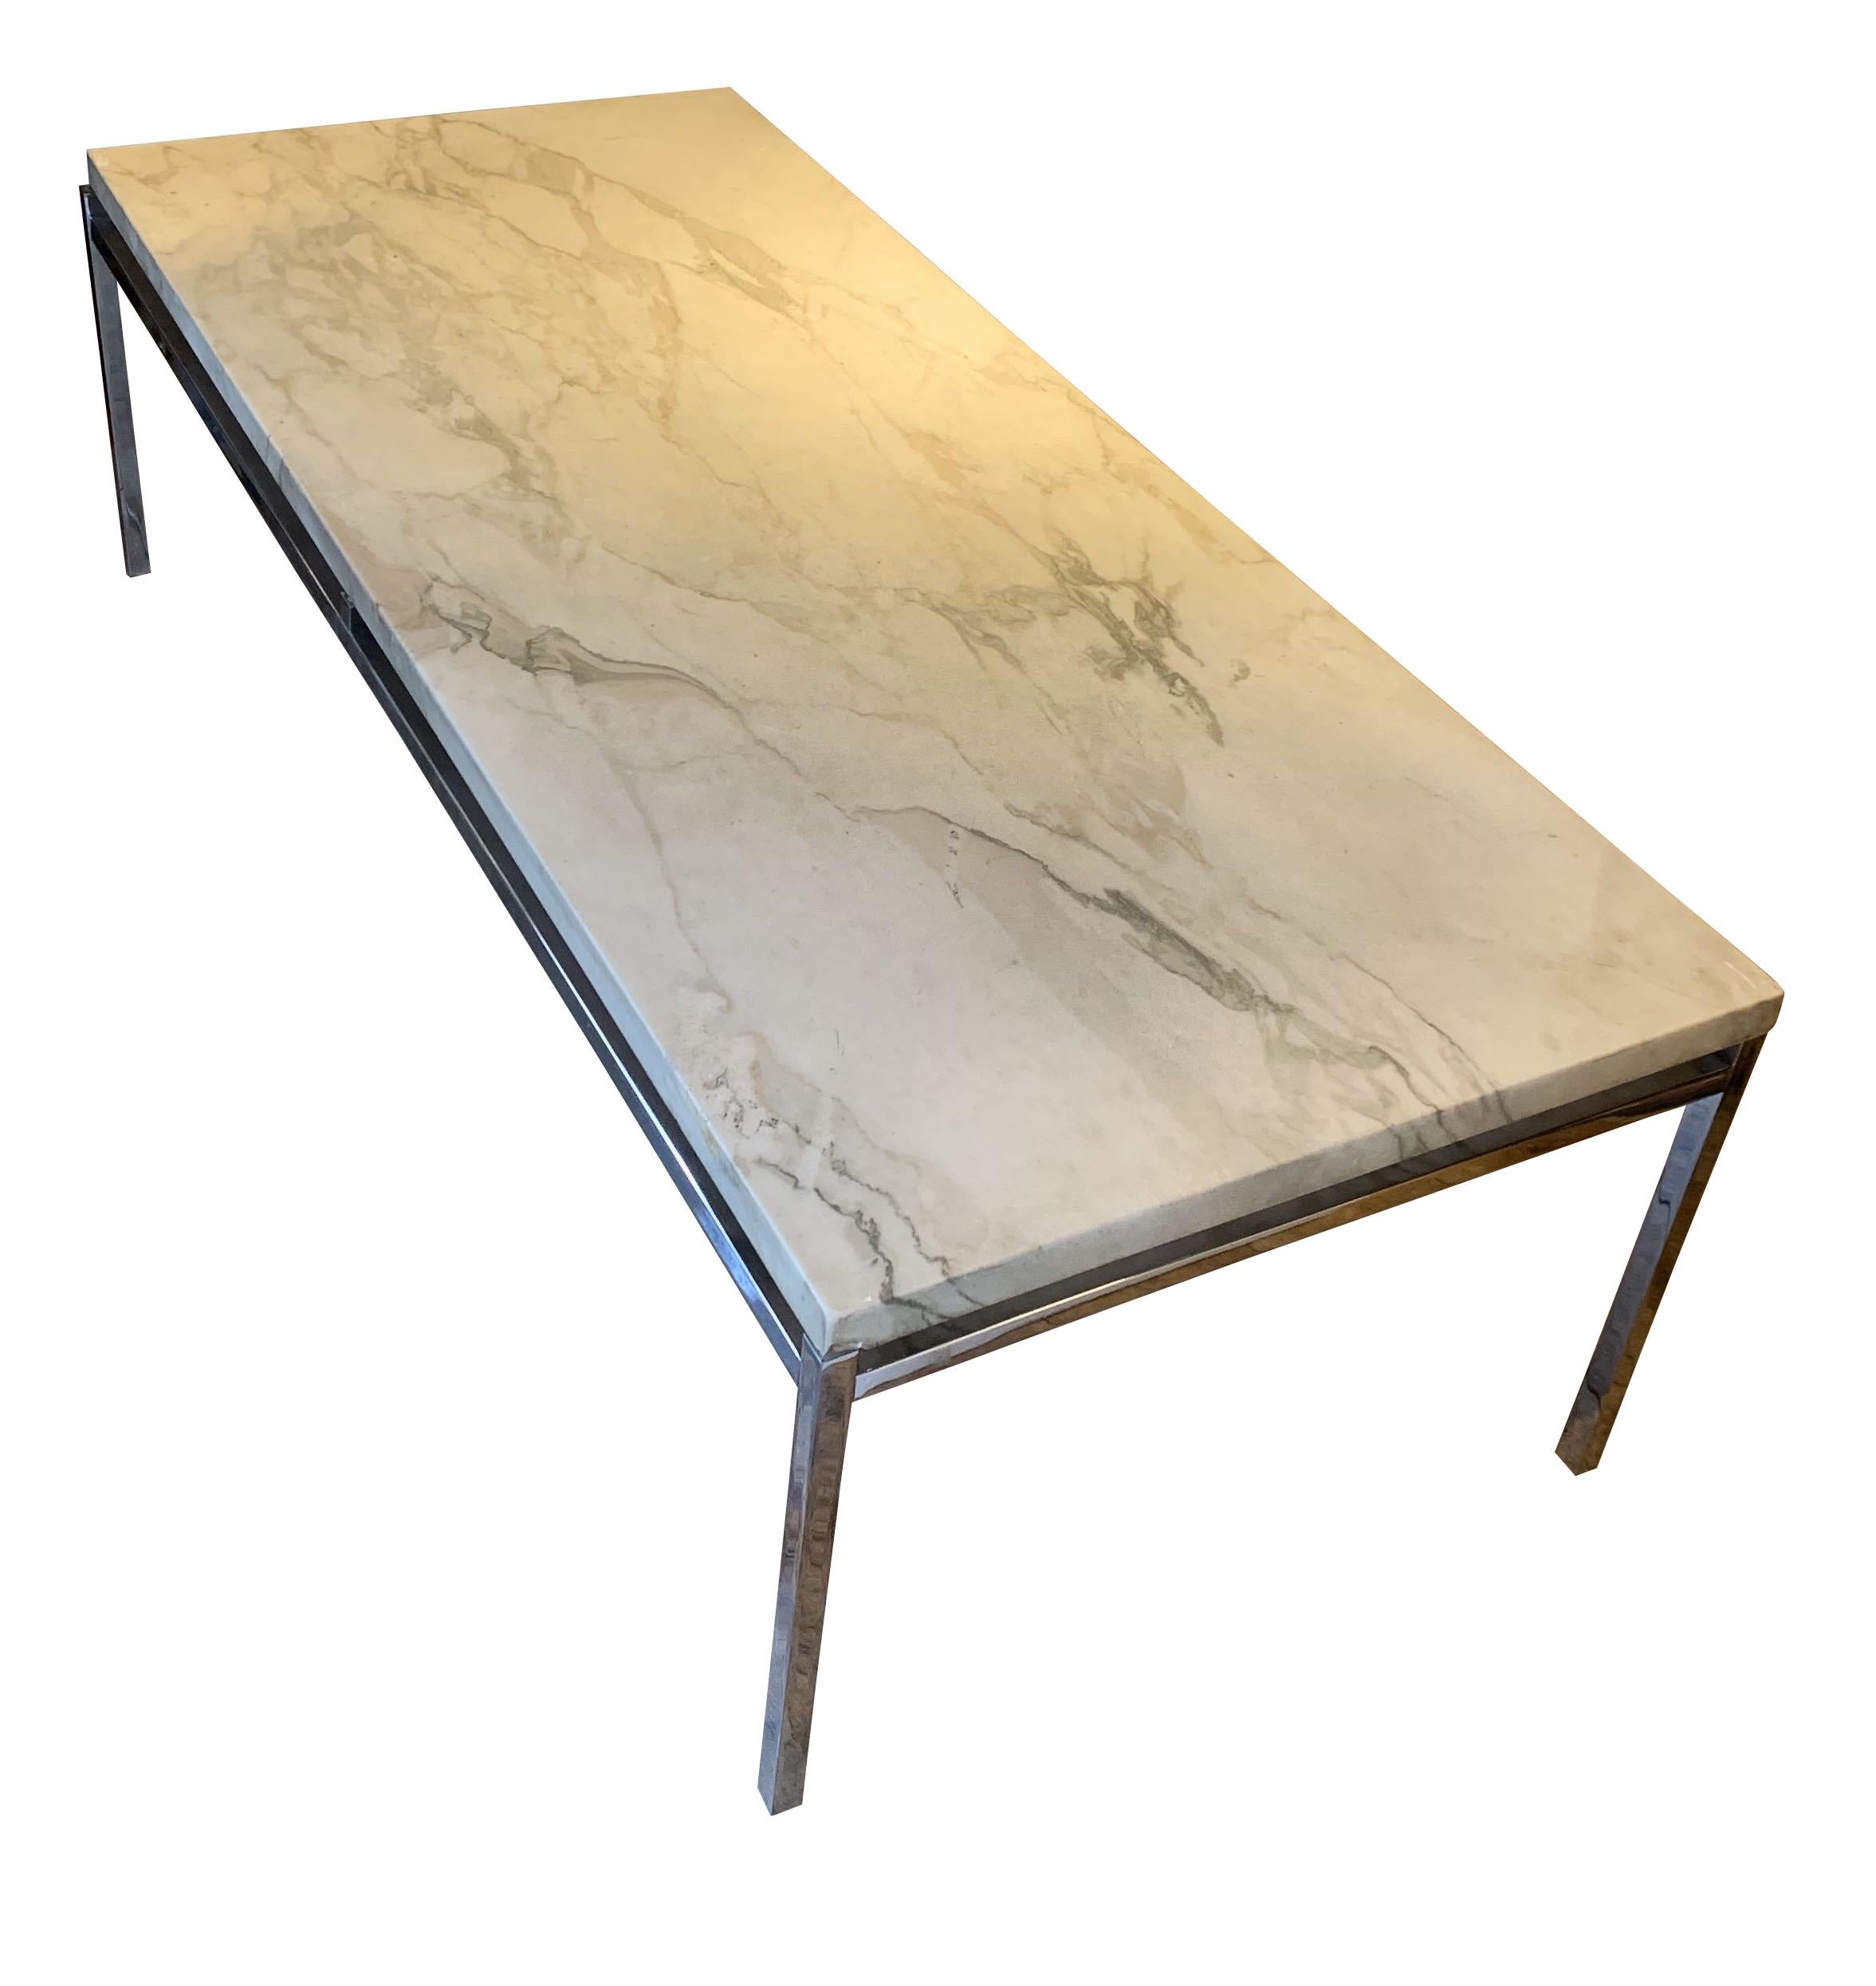 Table basse du milieu du siècle en marbre blanc adouci. De belles veines grises parcourent le plateau de la table.
Base en nickel au design simple.
   